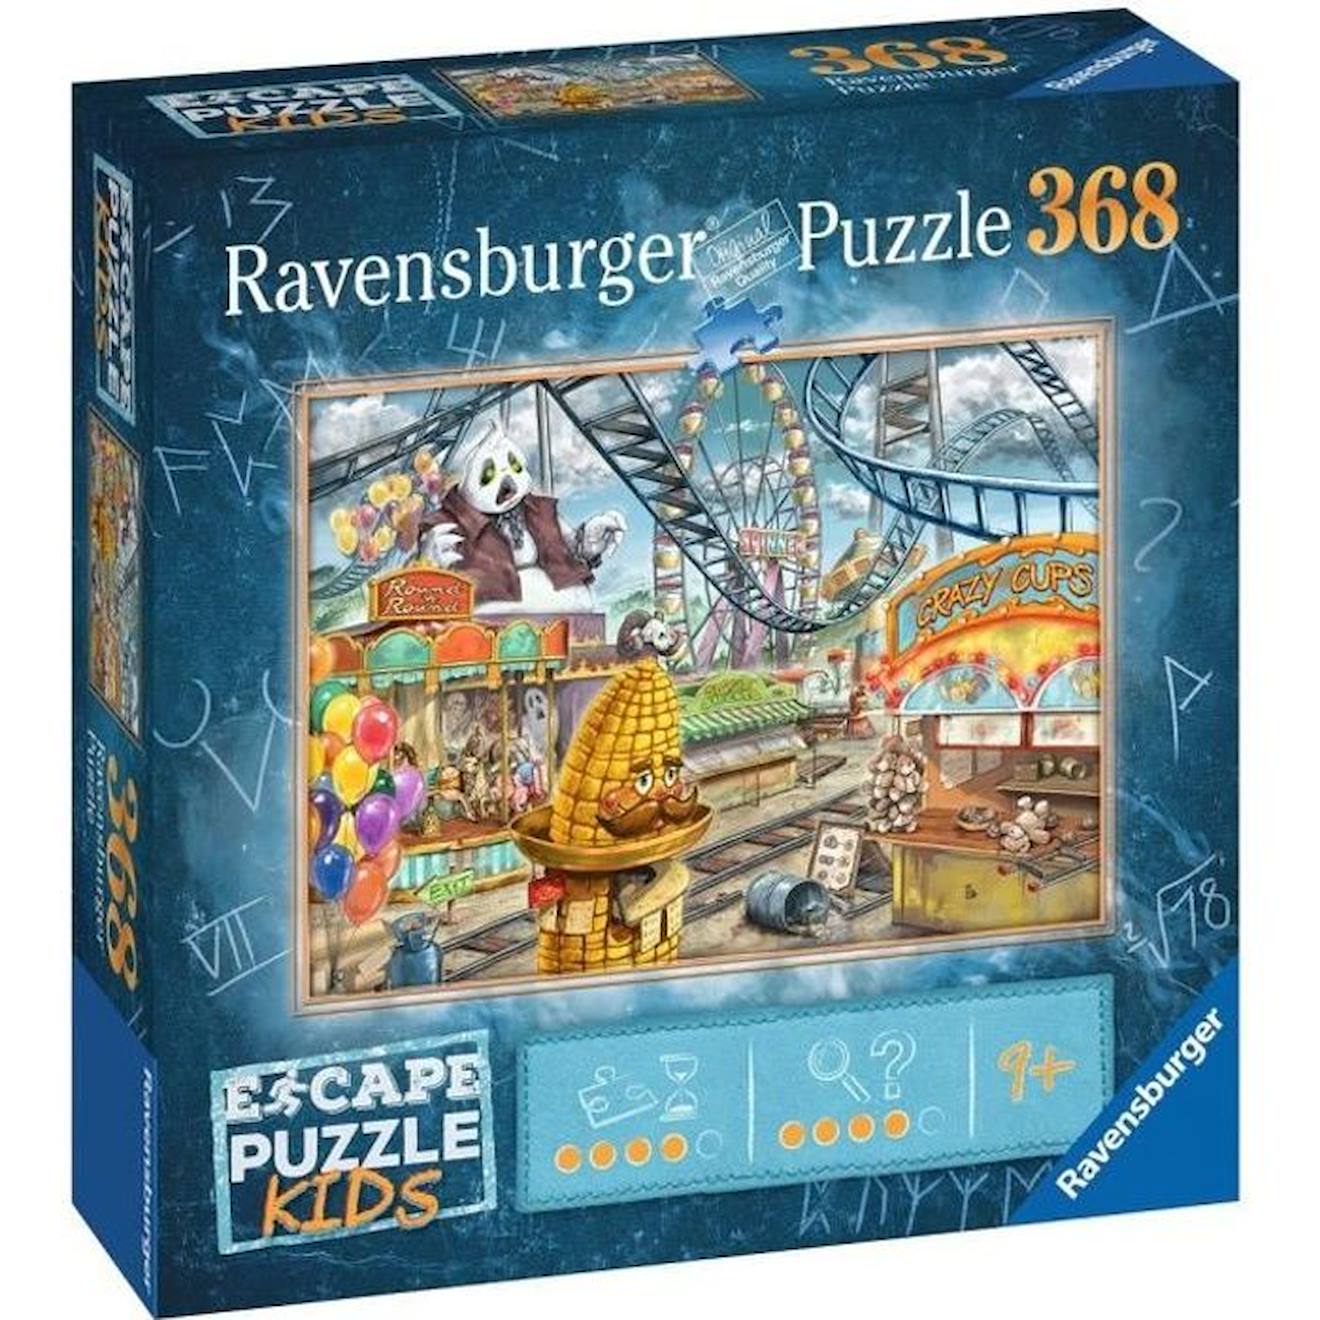 Escape Puzzle Kids - Le Parc D'attractions - Ravensburger - Puzzle Escape Game 368 Pièces Bleu